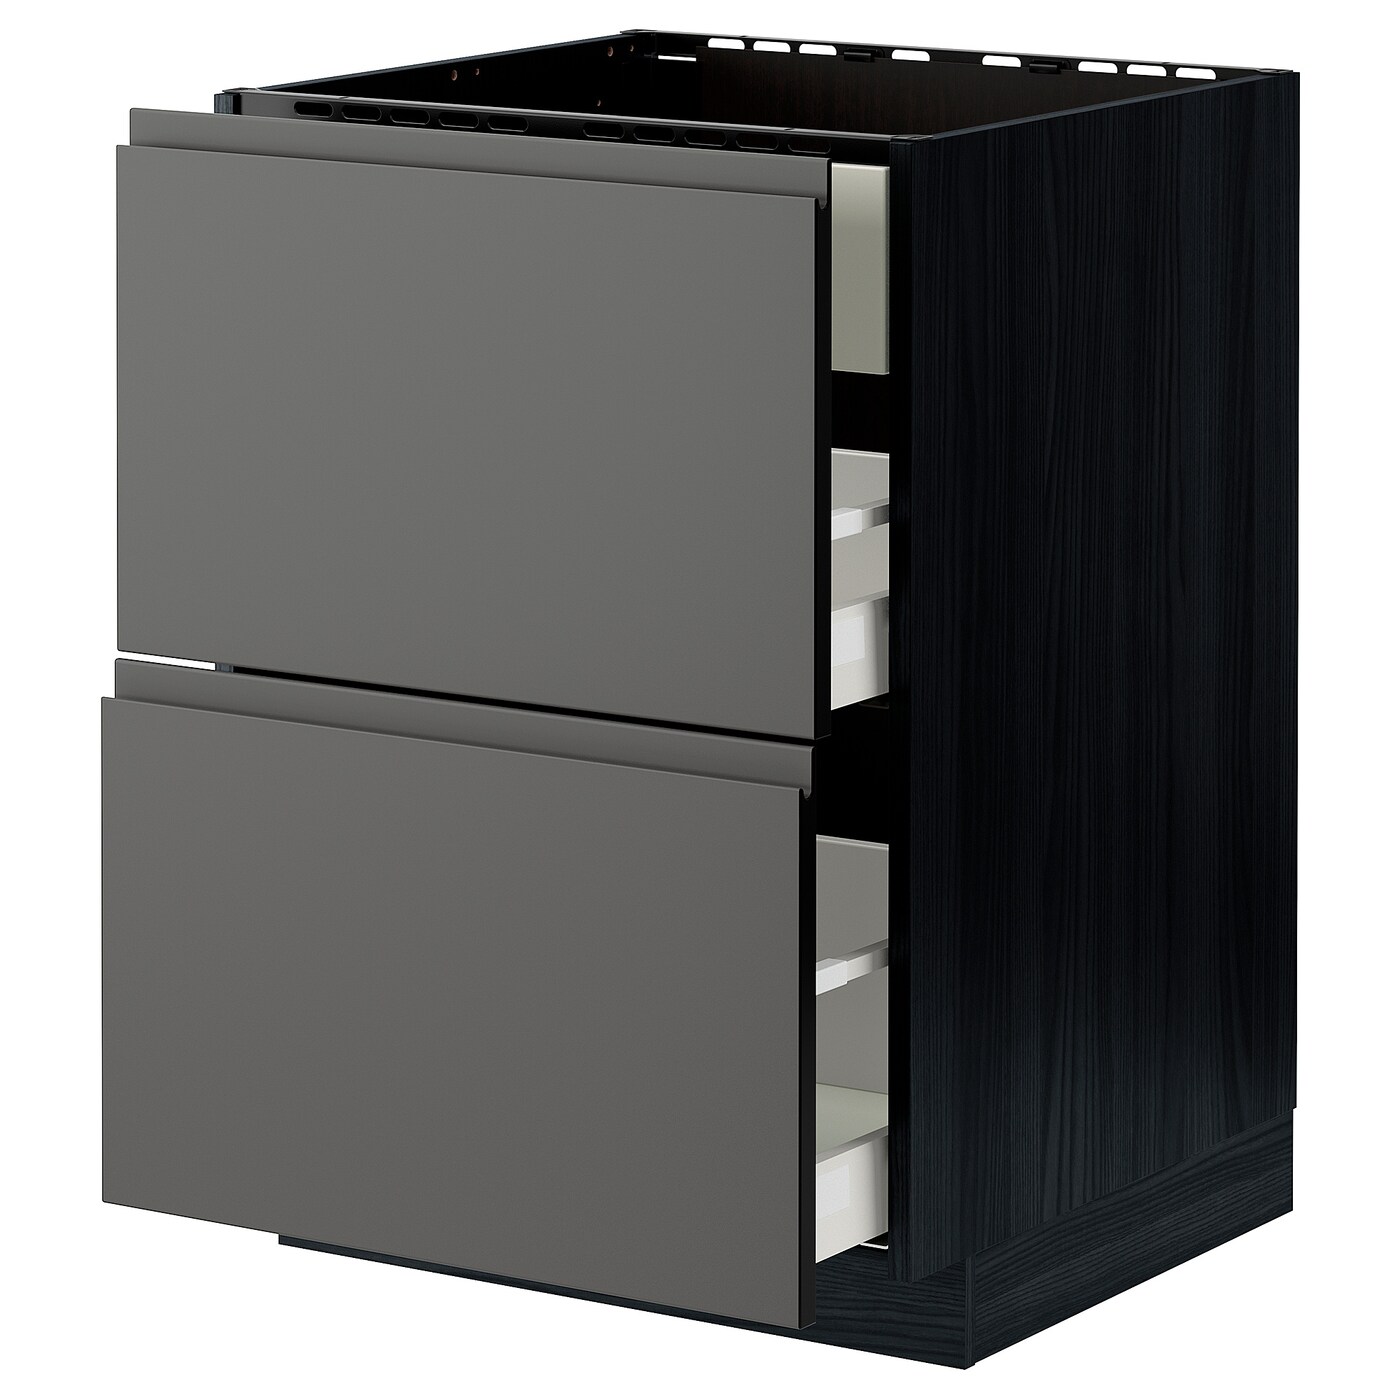 Напольный шкаф - METOD / MAXIMERA IKEA/ МЕТОД/ МАКСИМЕРА ИКЕА,  88х60 см, черный/серый